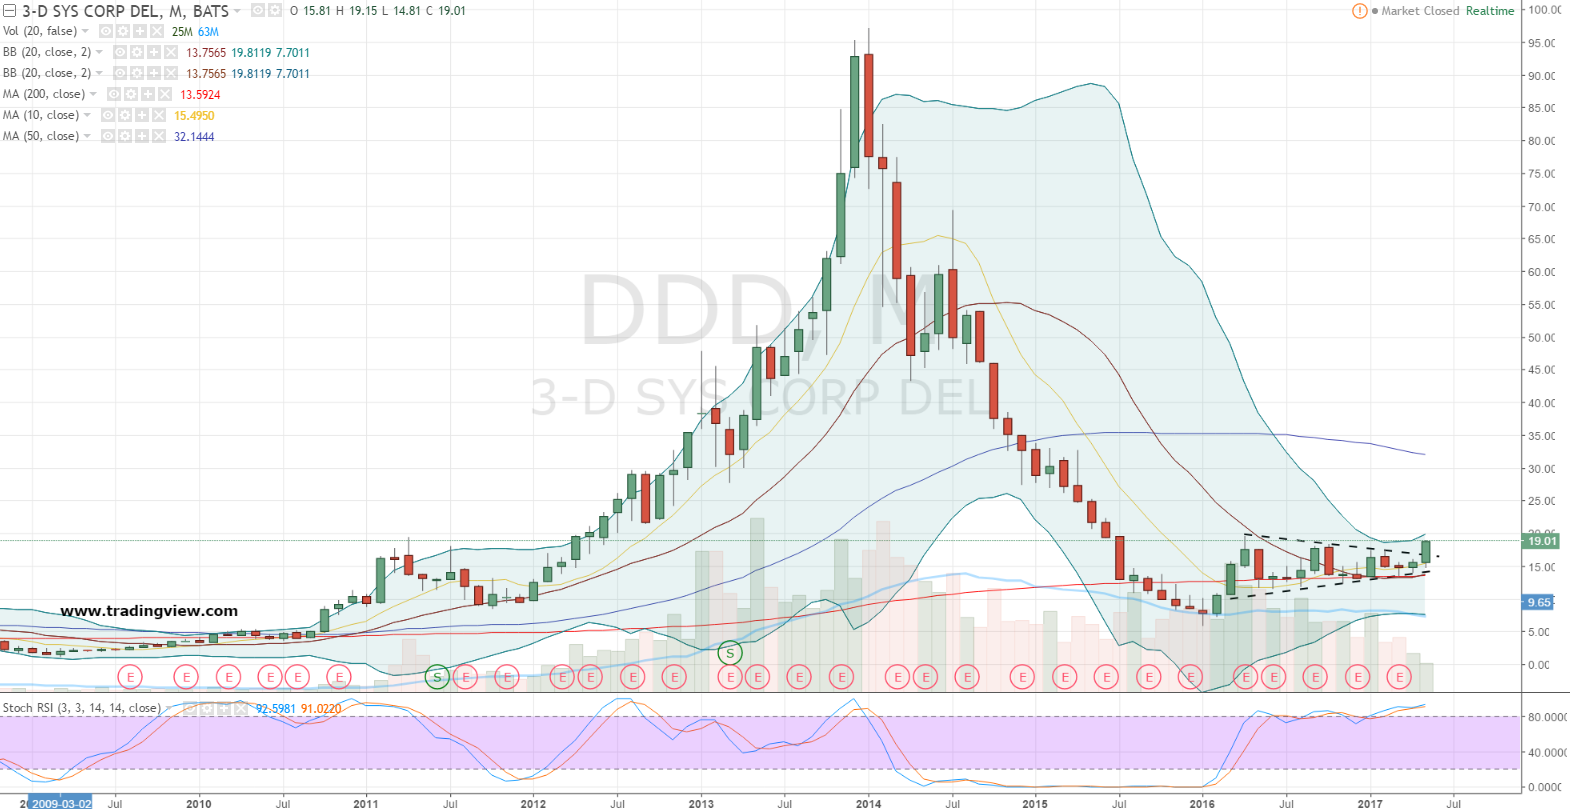 Ddd Stock Chart